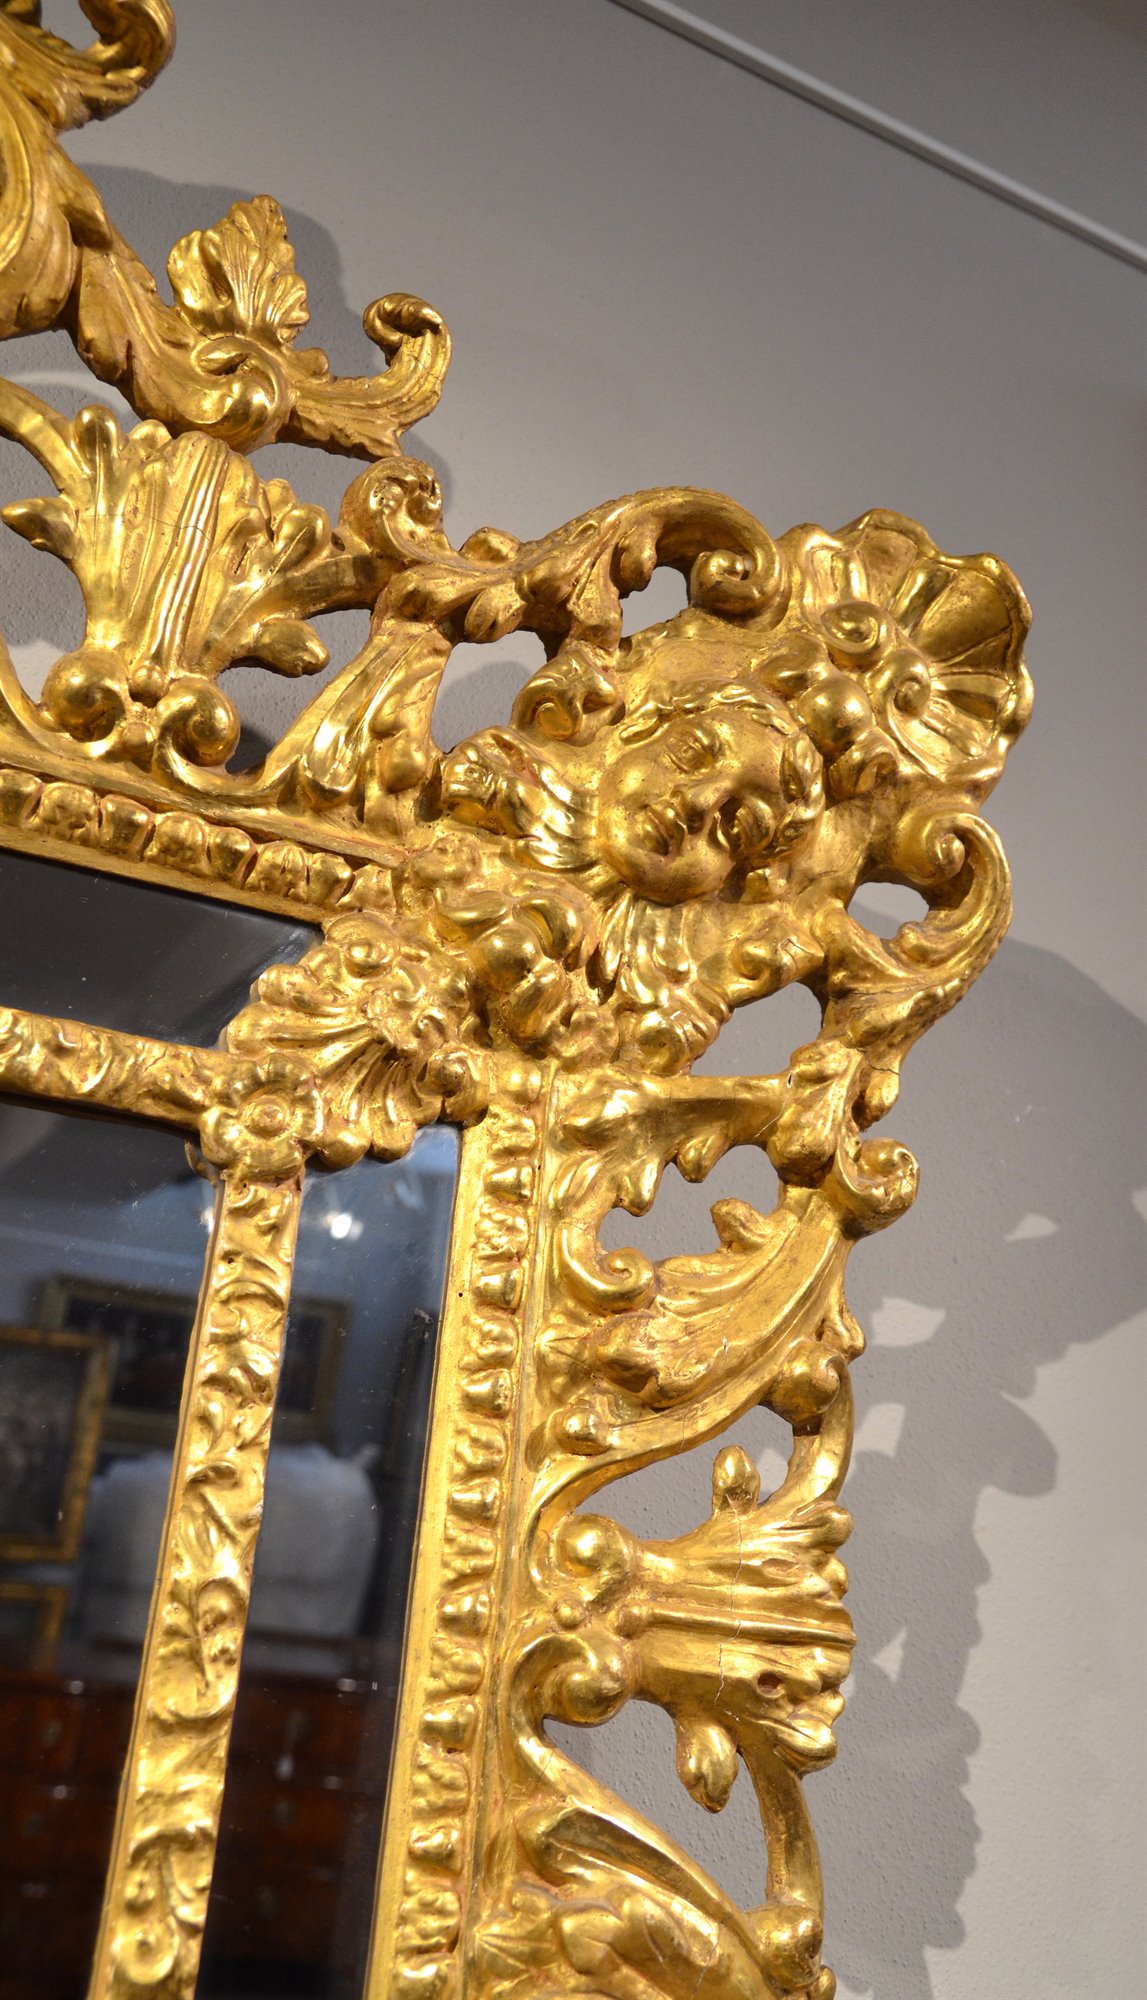 Prestigiosa specchiera, di dimensioni importanti,  in legno intagliato e dorato